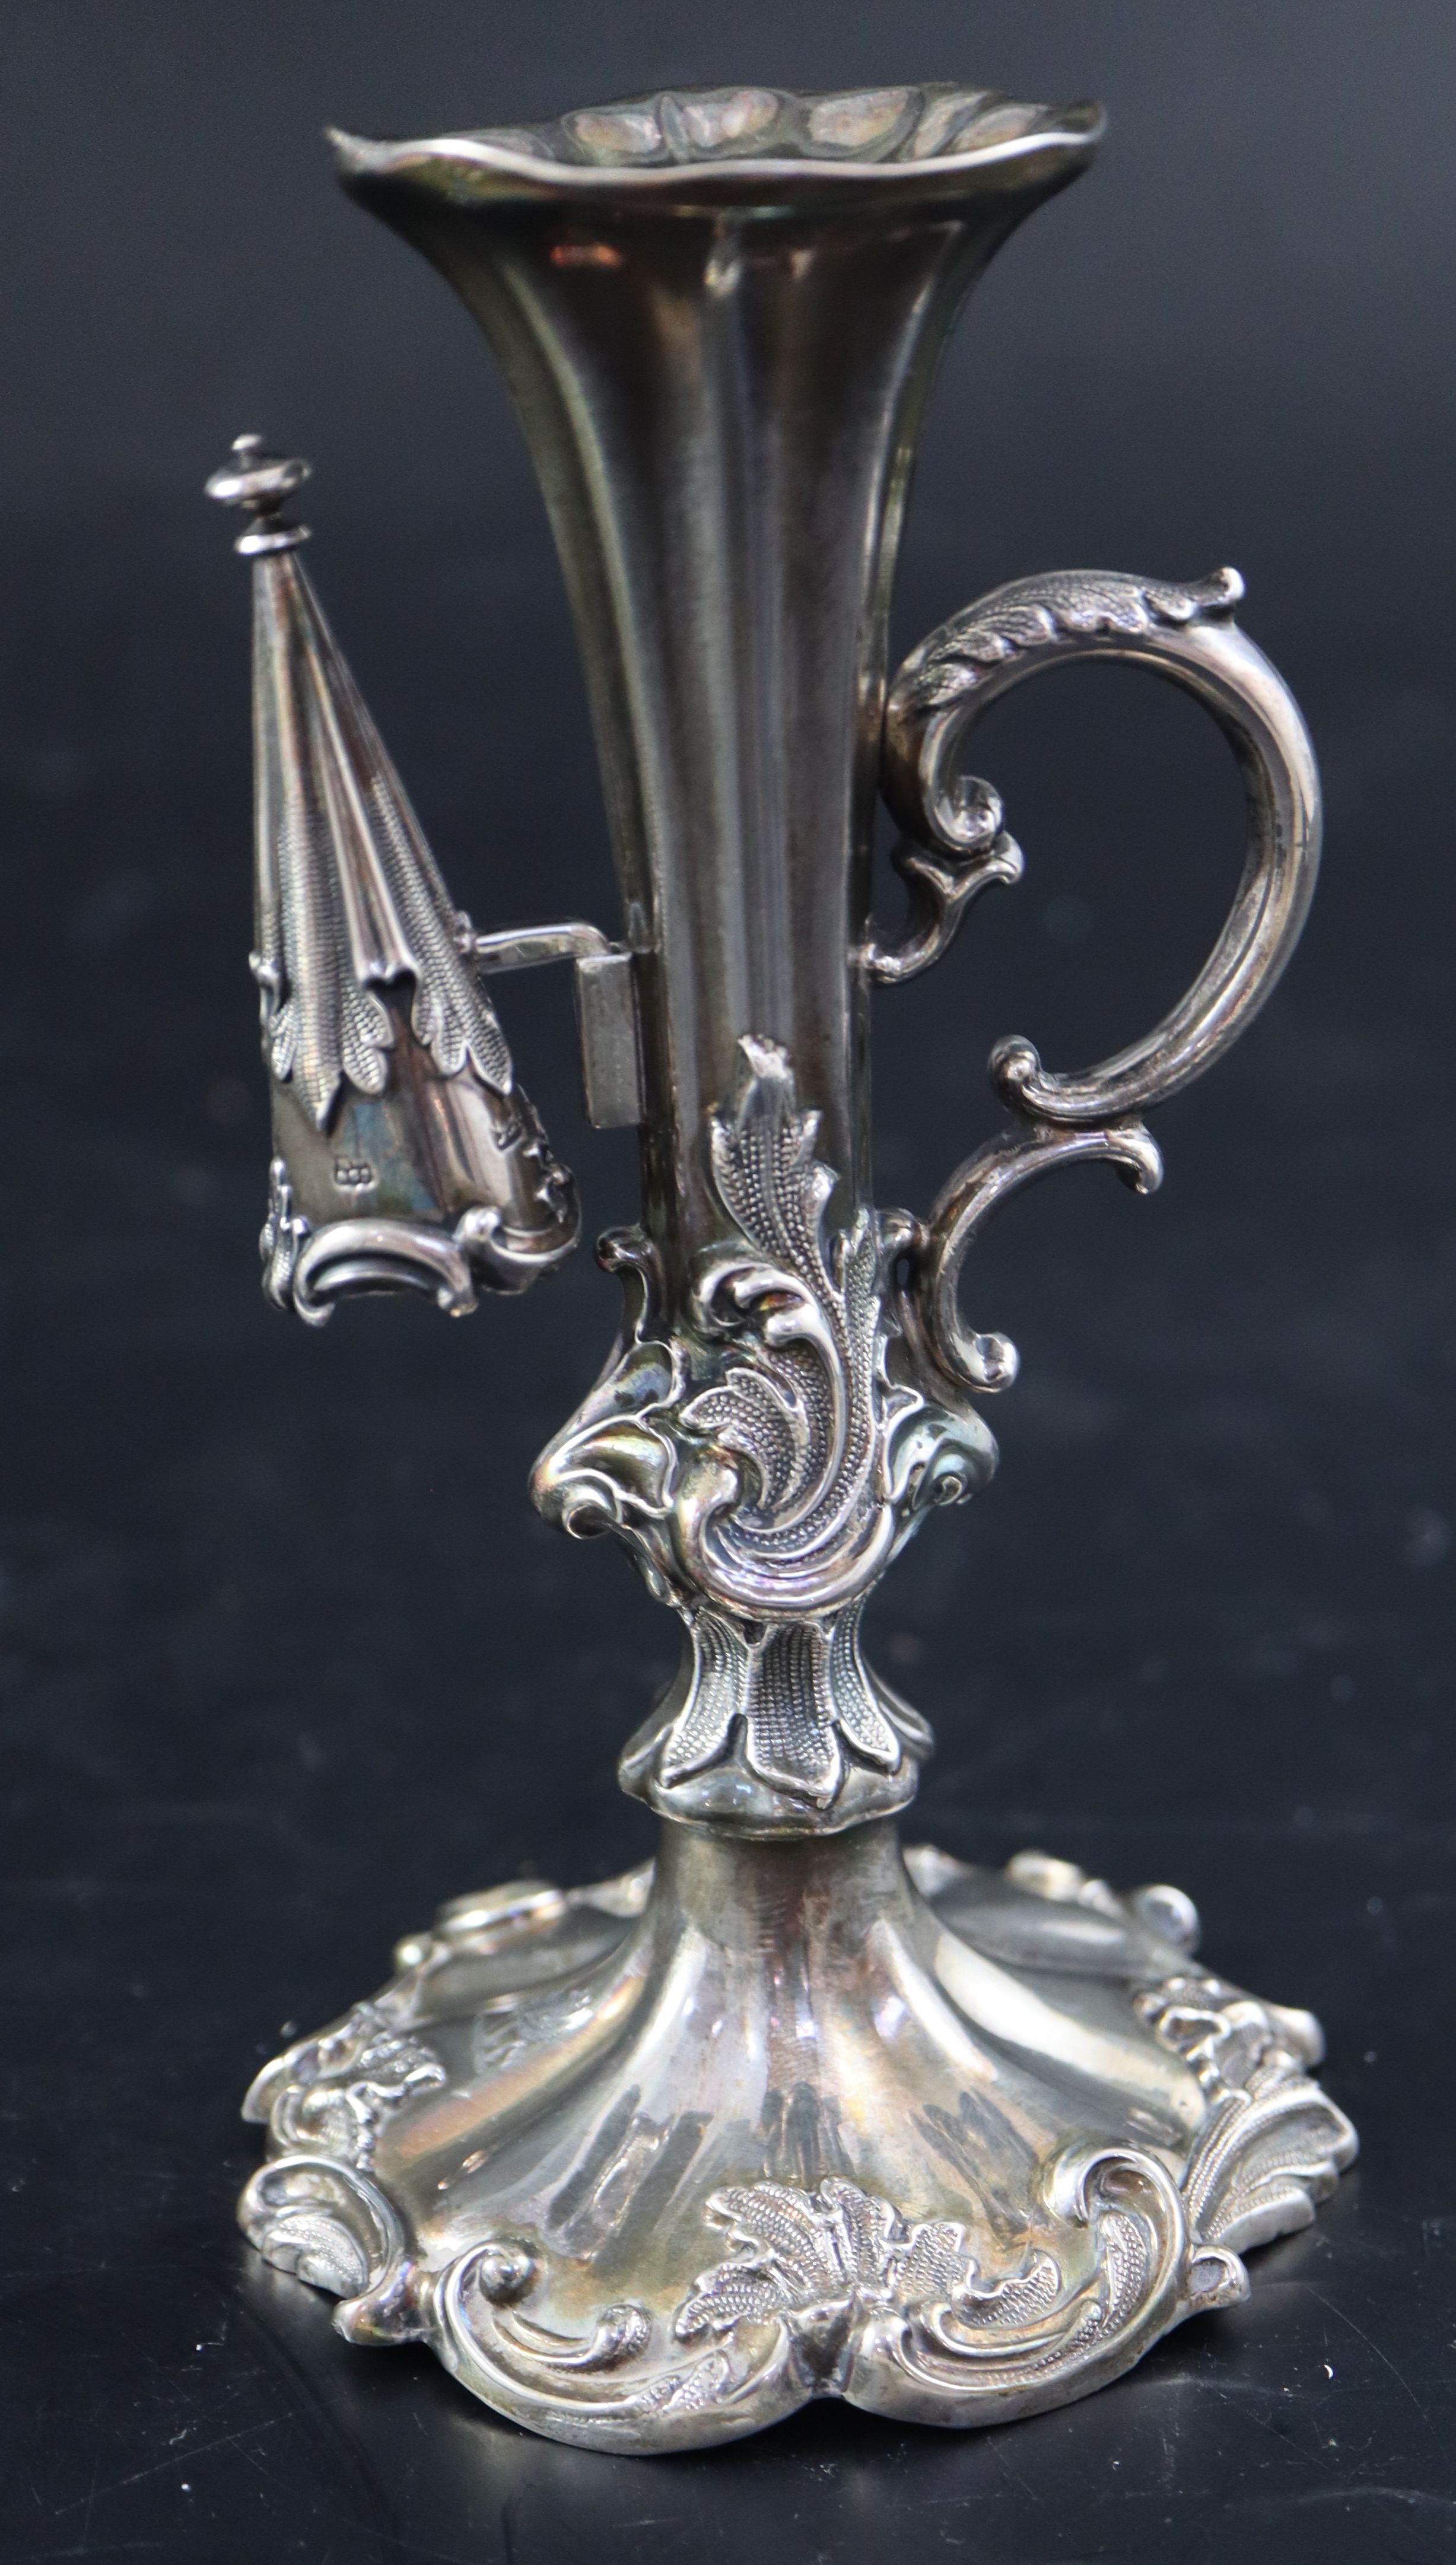 An ornate Victorian silver chamberstick, 14.3cm, gross 194 grams.